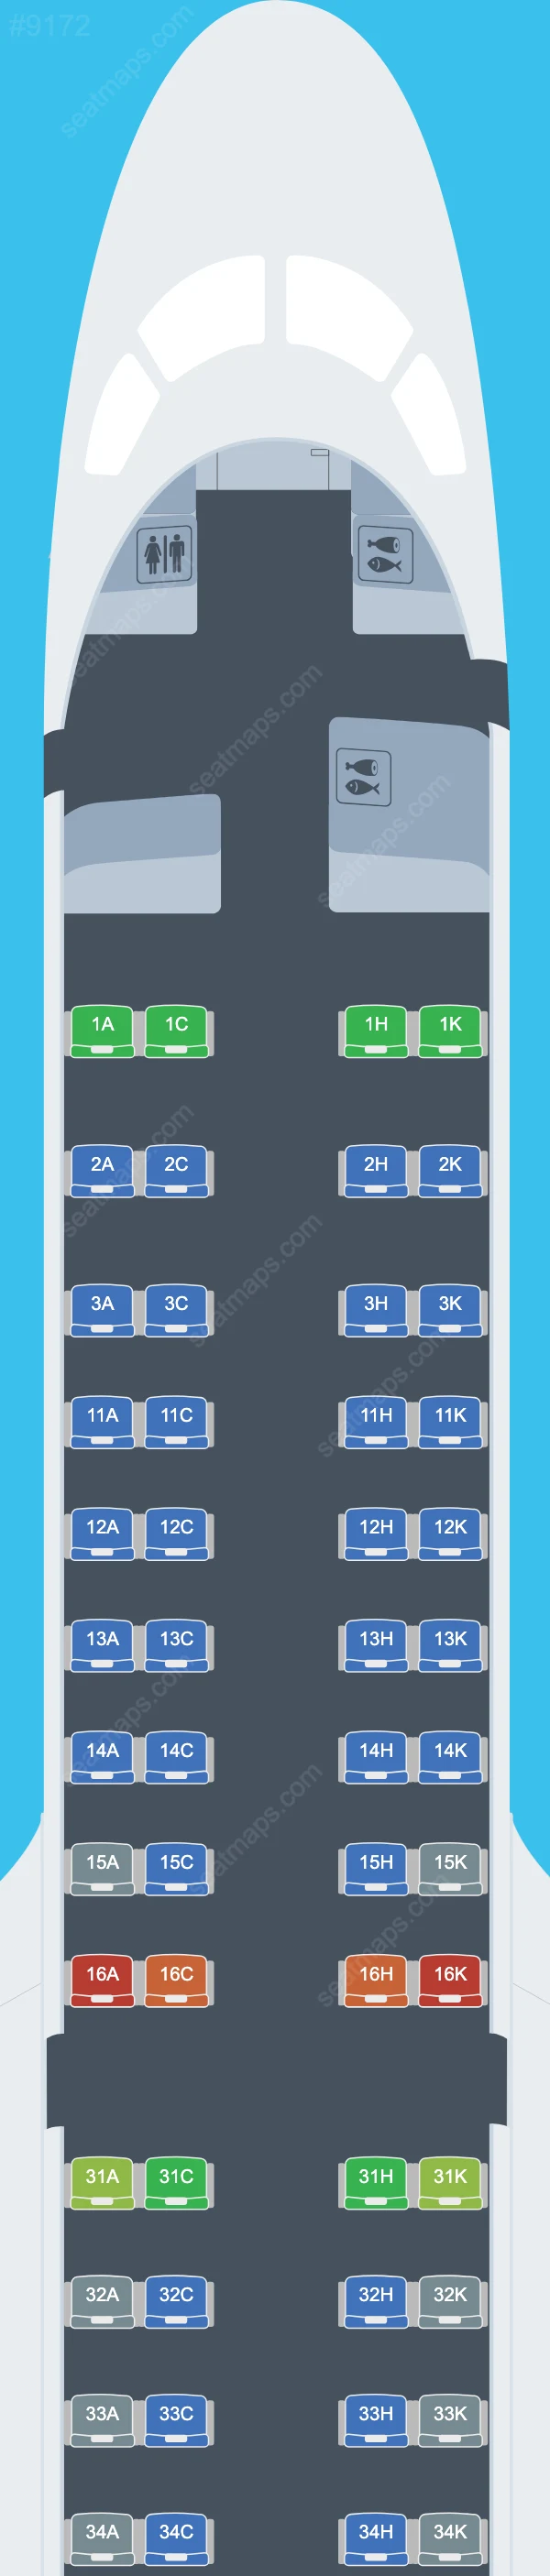 Air Astana Embraer E190-E2 Seat Maps E190 E2 V.1